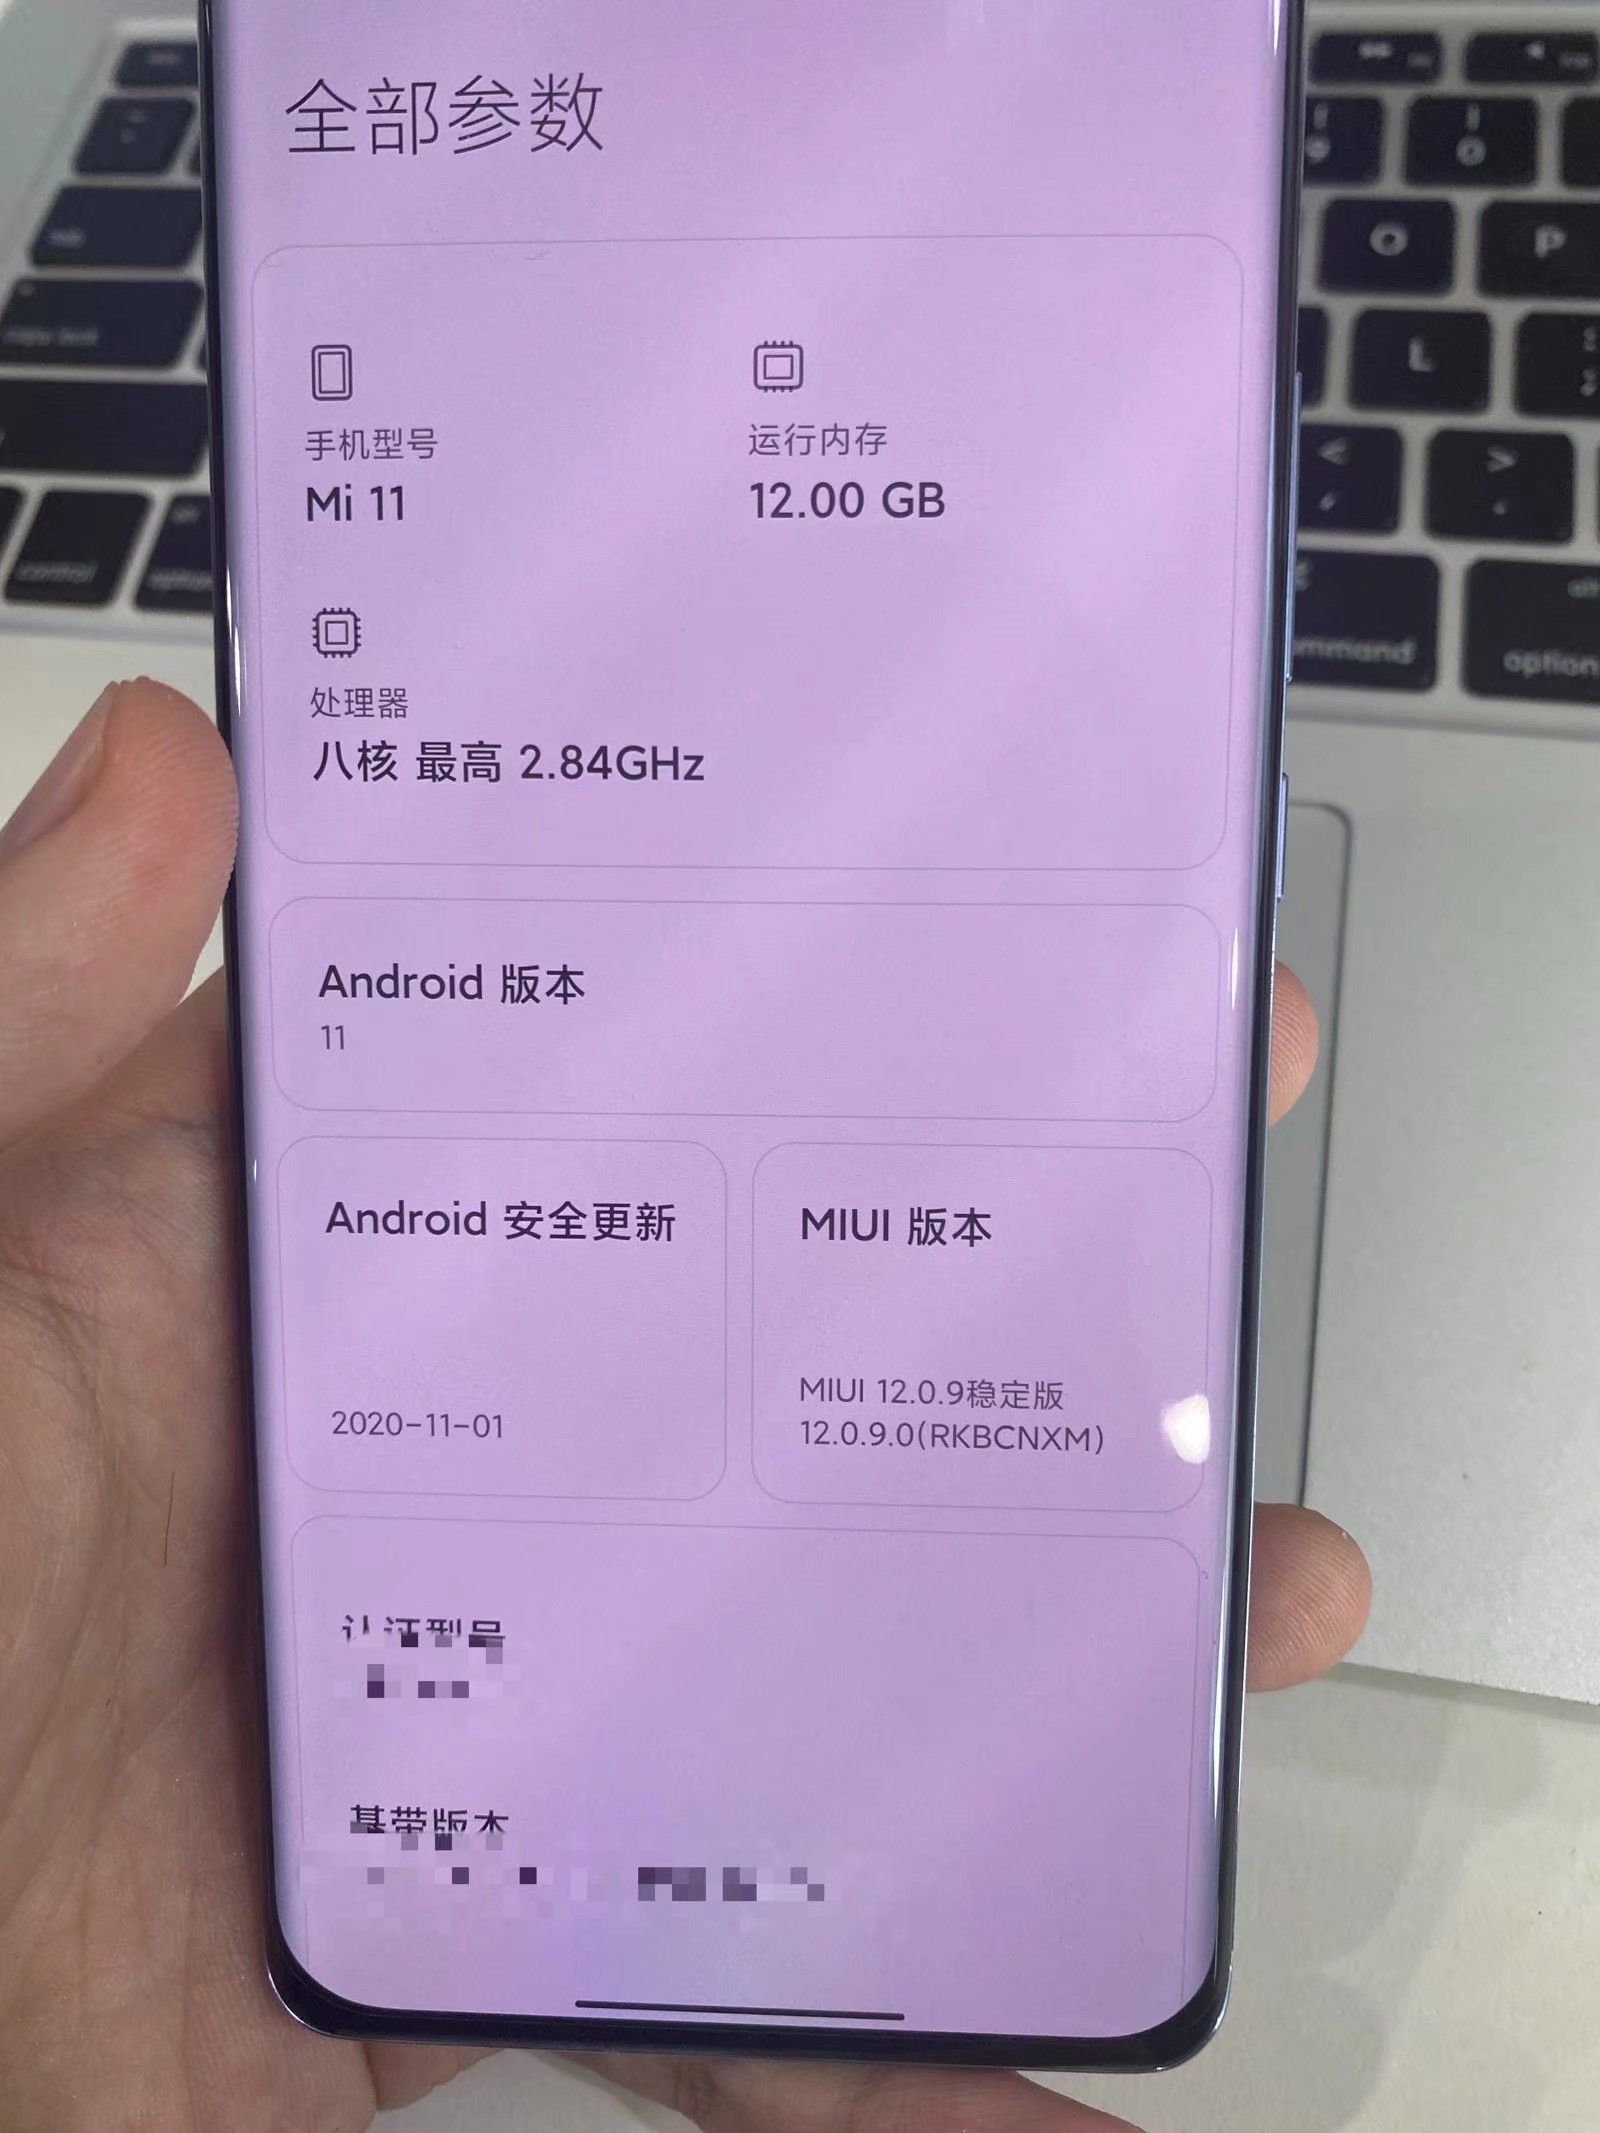 Xiaomi Mi 11 zdjęcia kiedy premiera design plotki przecieki wycieki